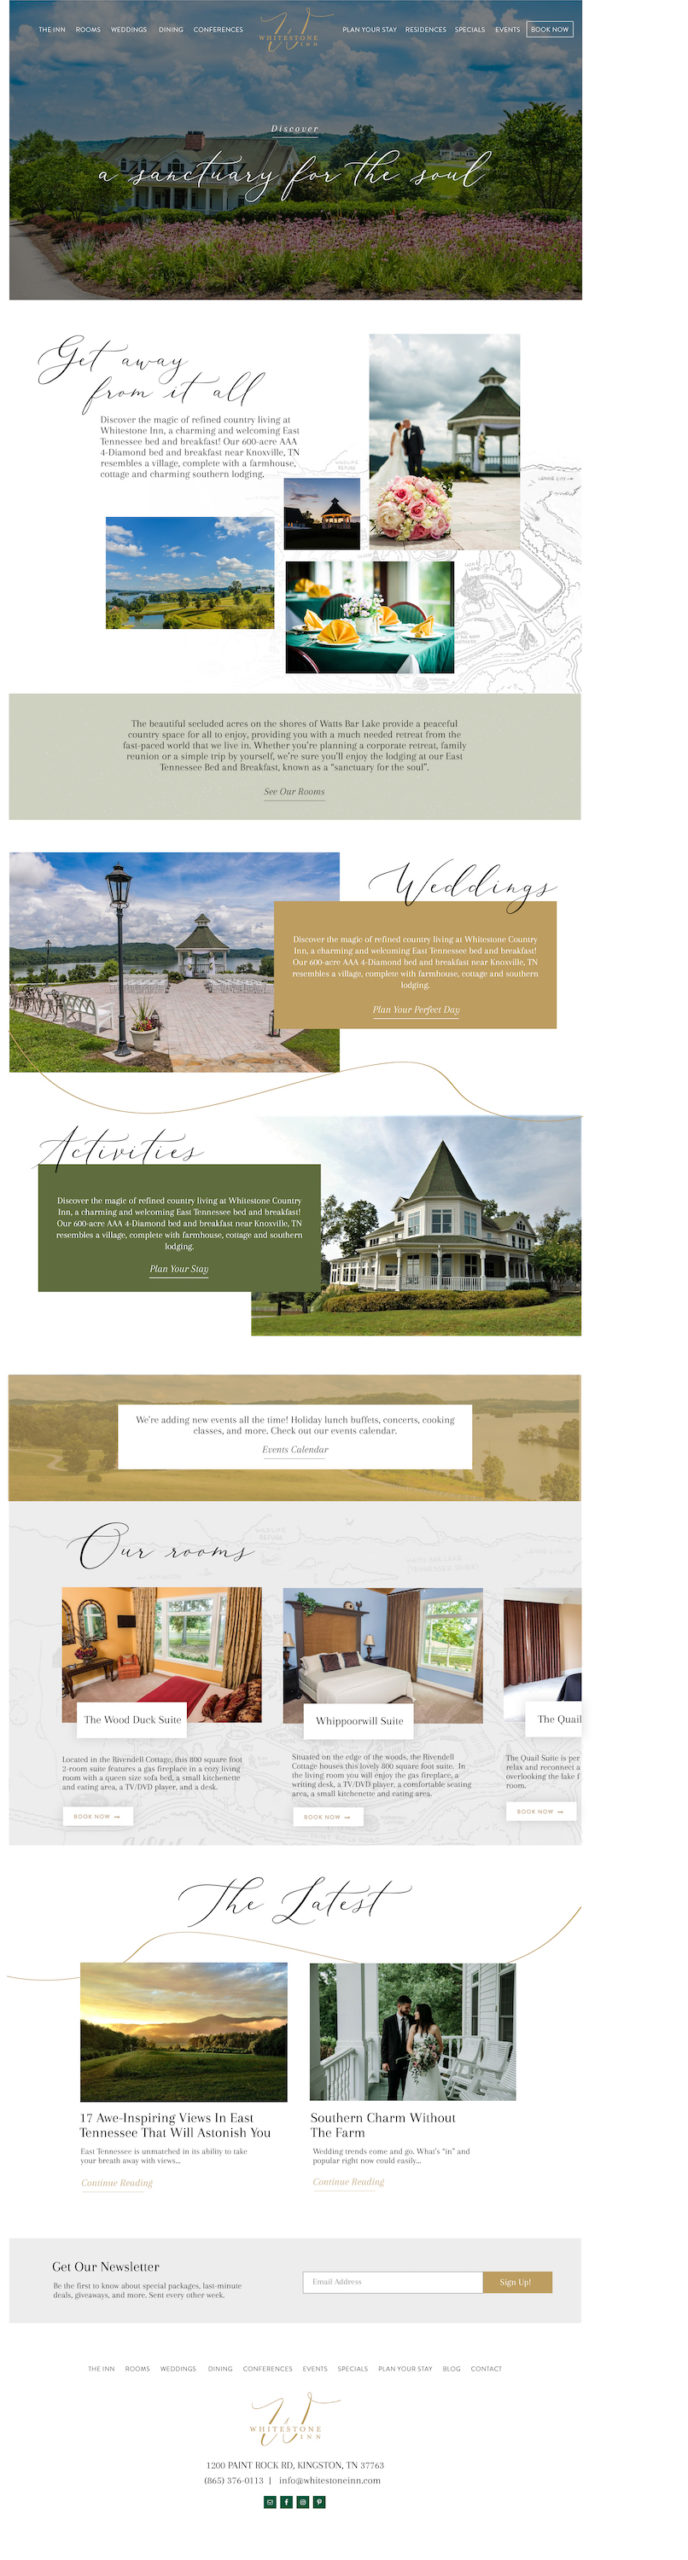 Mockup for the new Whitestone Inn website